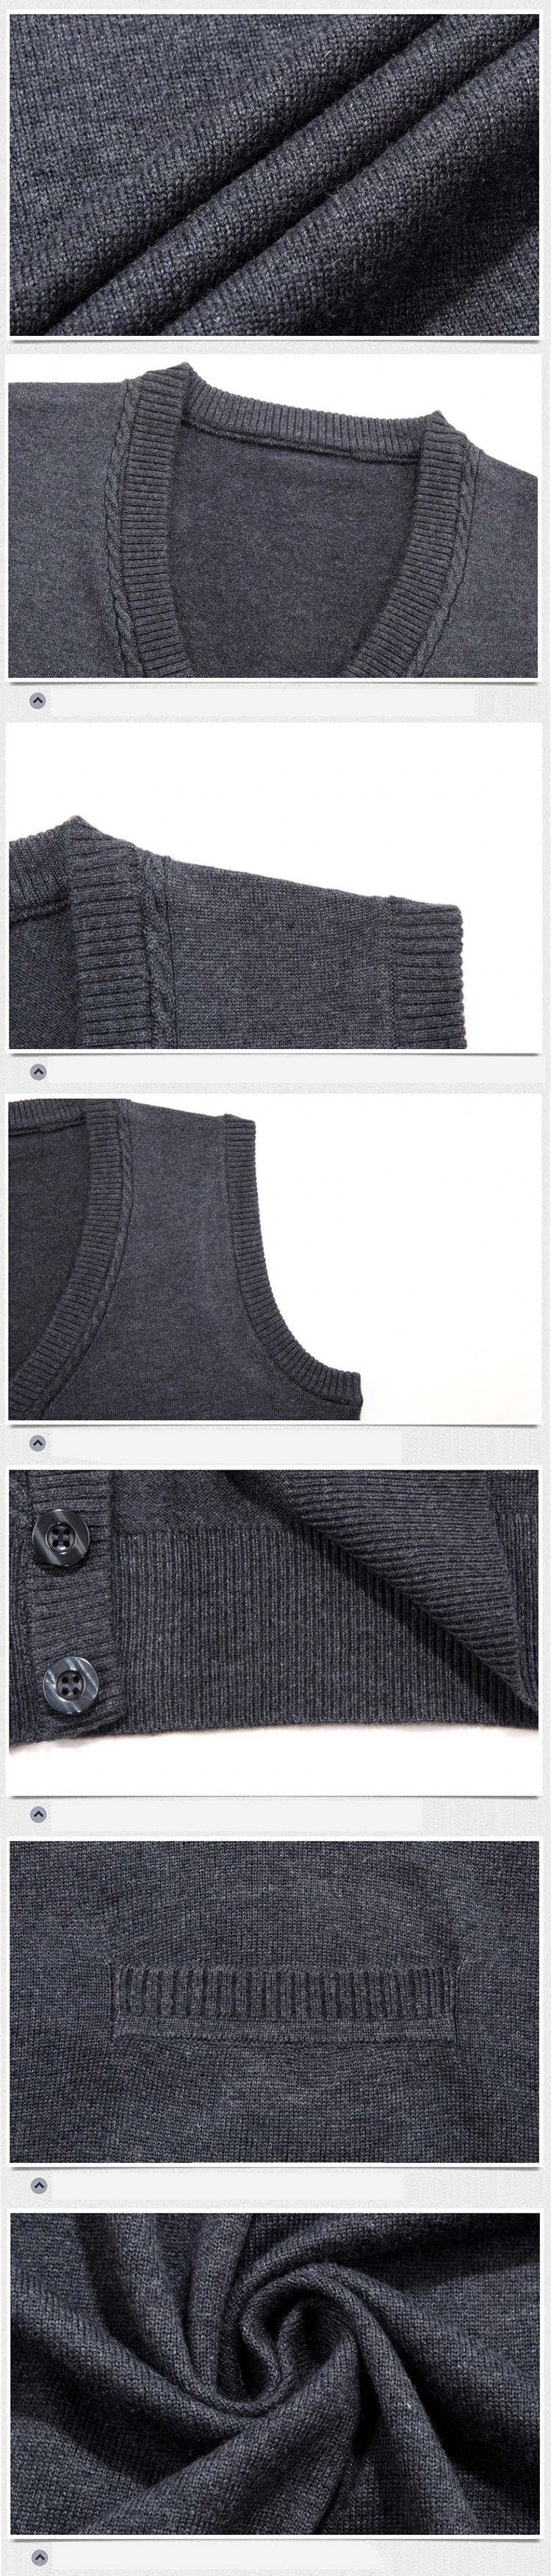 Мужской свитер кардиган-безрукавка Homme жилет подходит с v-образным вырезом Модный деловой повседневный мужской классический стиль сохраняет тепло MOOWNUC MWC карман